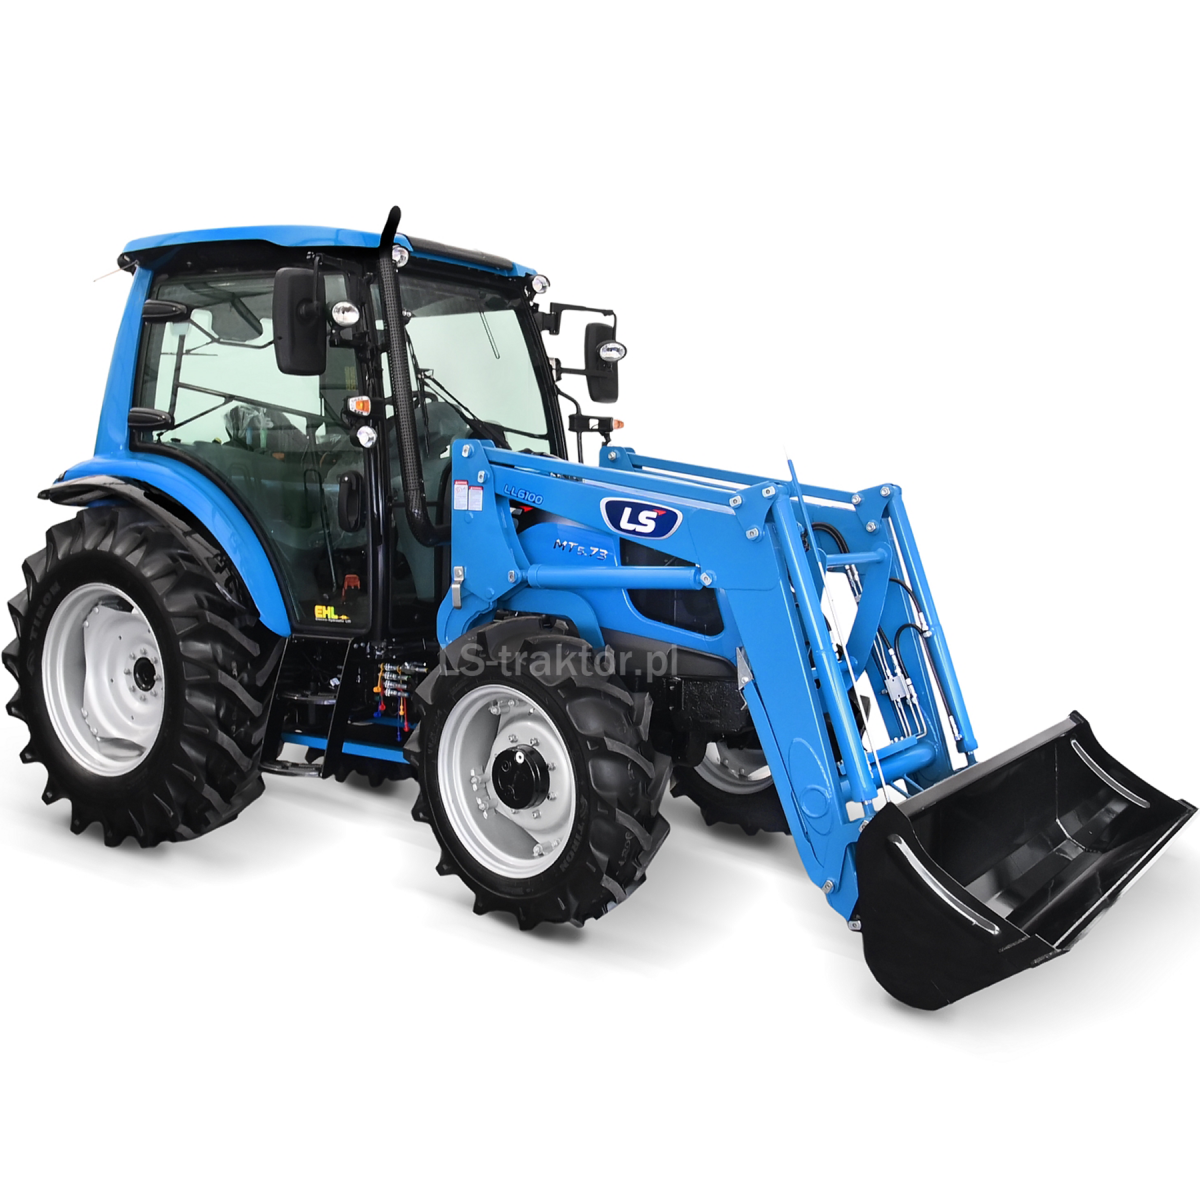 LS Tractor MT5.73 PST 4x4 - 73 HP / CAB / EHL + LS LL6100 front loader